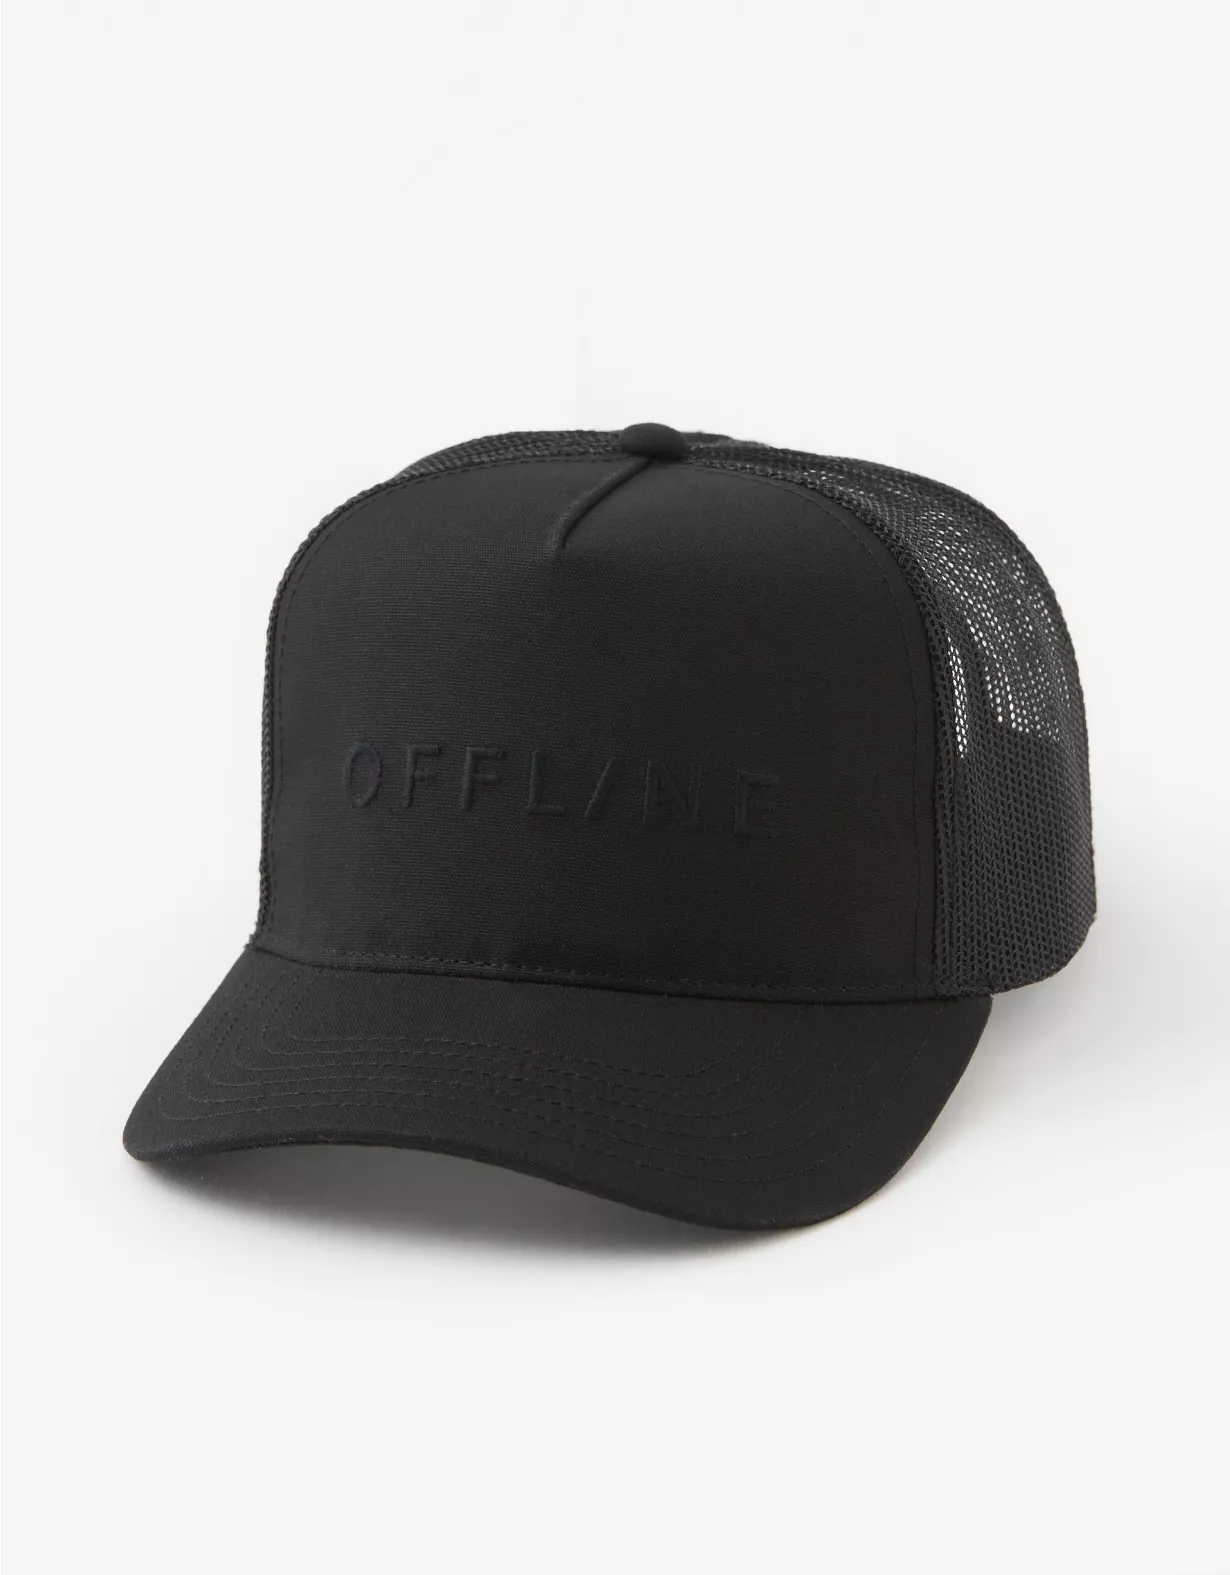 OFFLINE By Aerie Trucker Hat